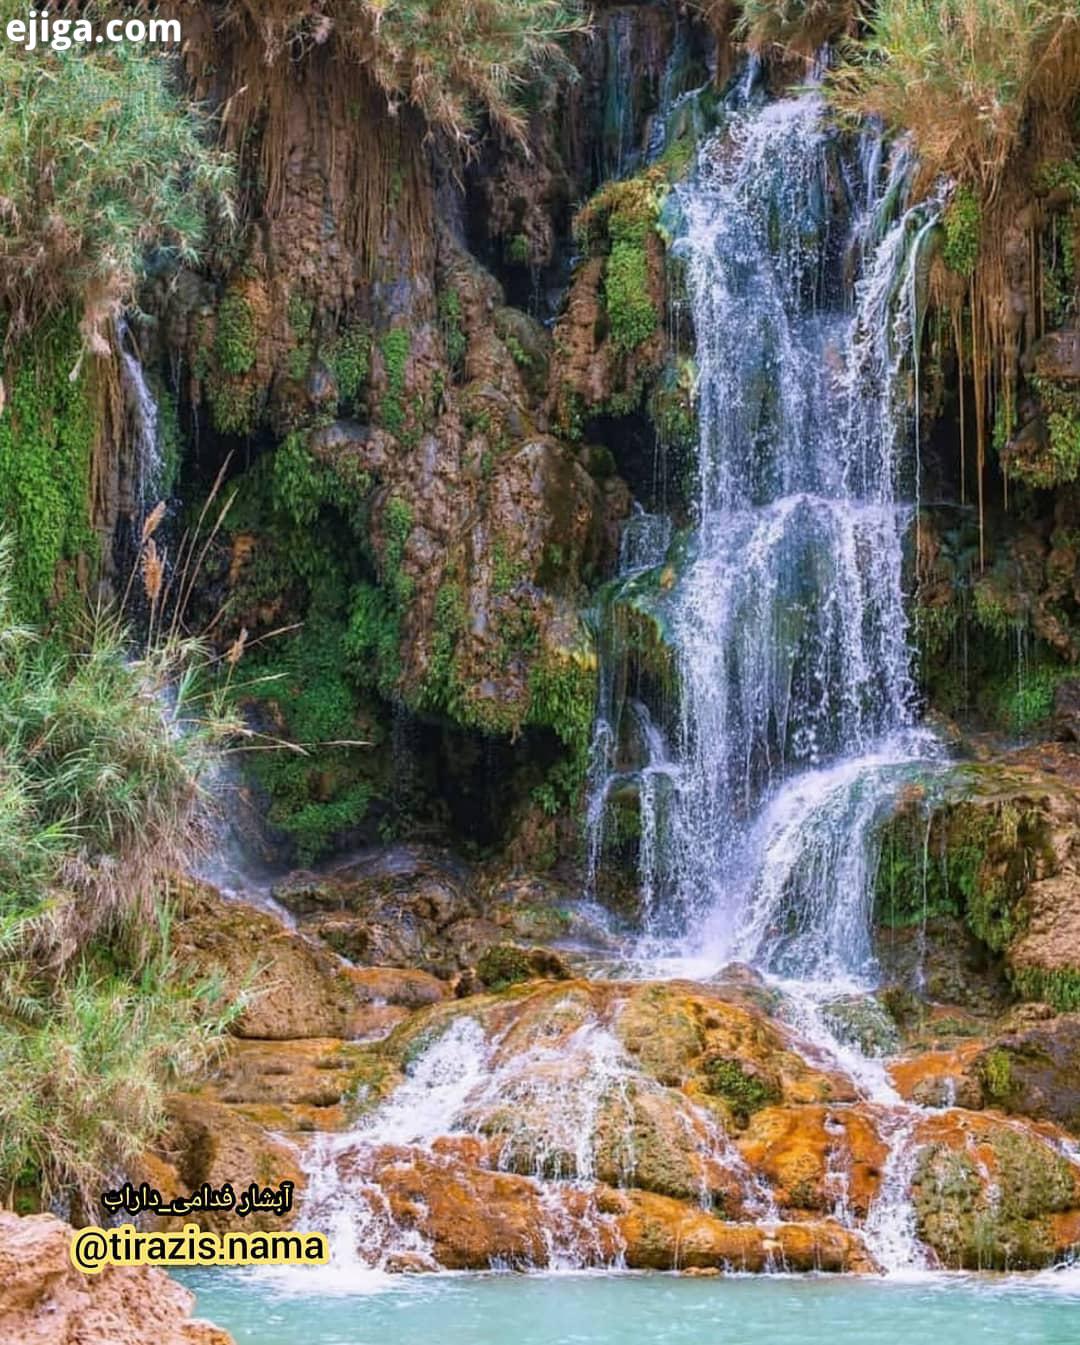 آبشار فدامی داراب یکی از زیباترین متفاوت ترین آبشارهای ایران ،آبشار فدامی  می باشد که در فاصله کیلو :: ایجیگا